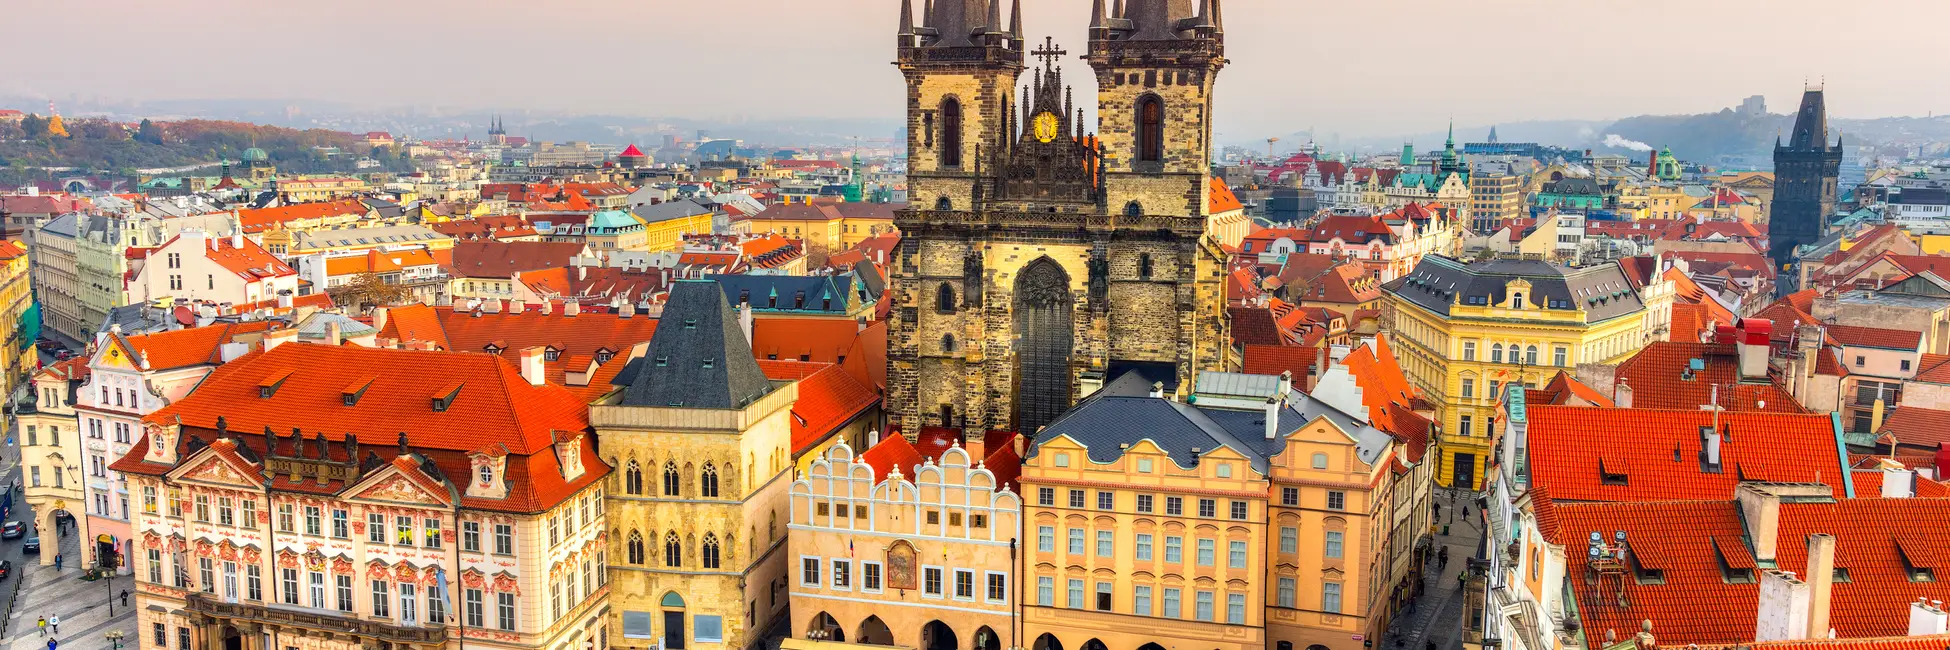 Le centre coloré de Prague